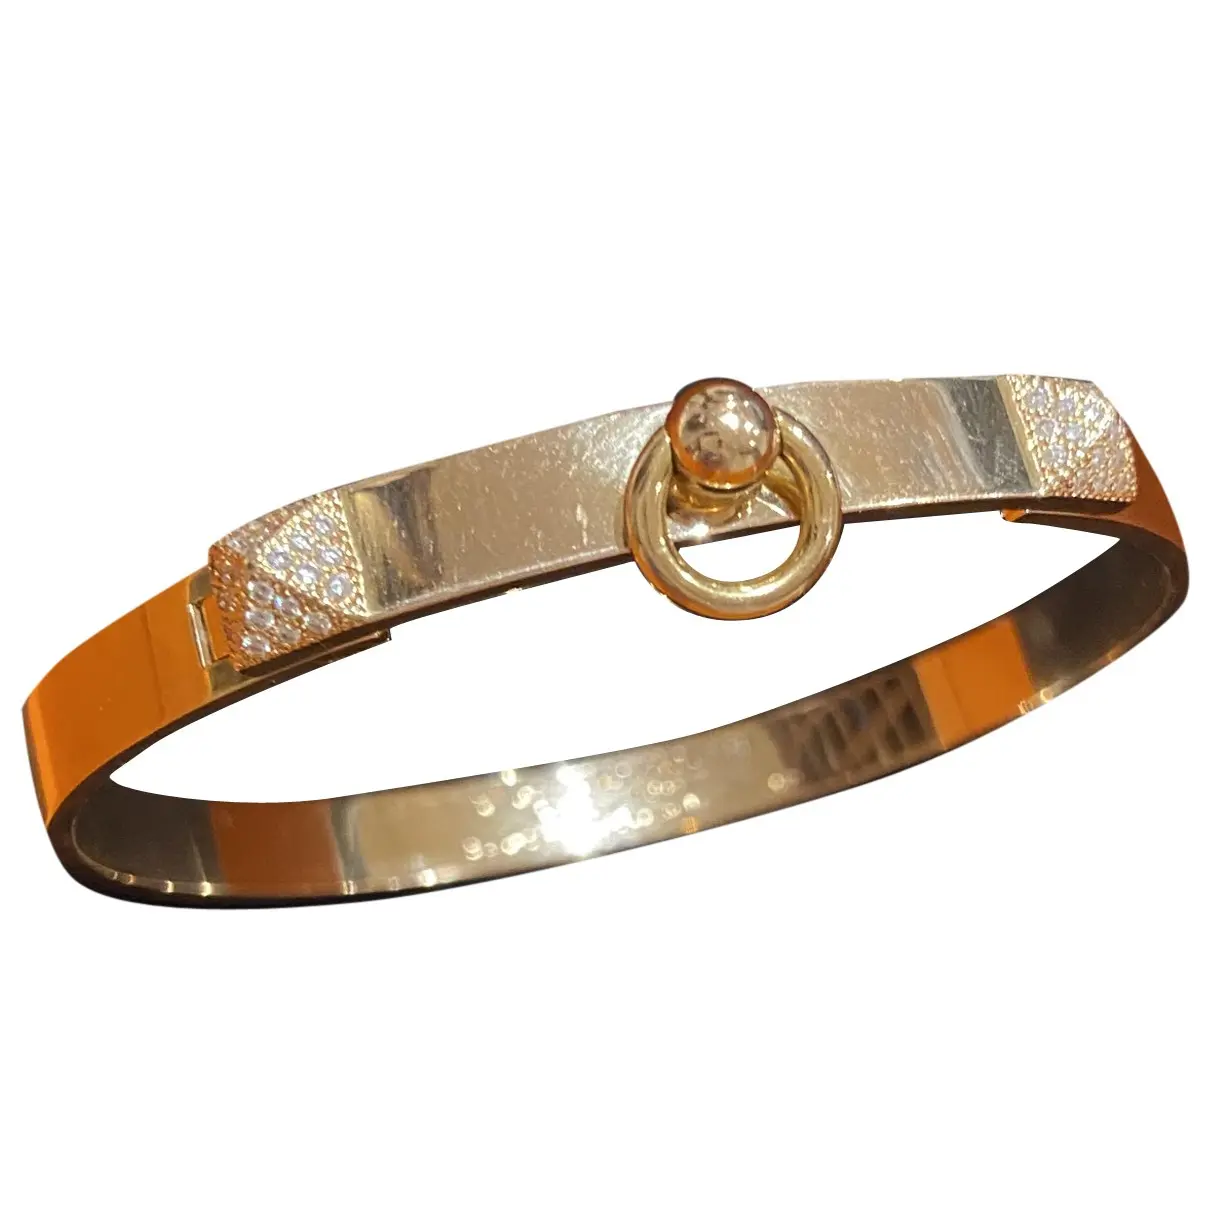 Collier de chien pink gold bracelet Hermès